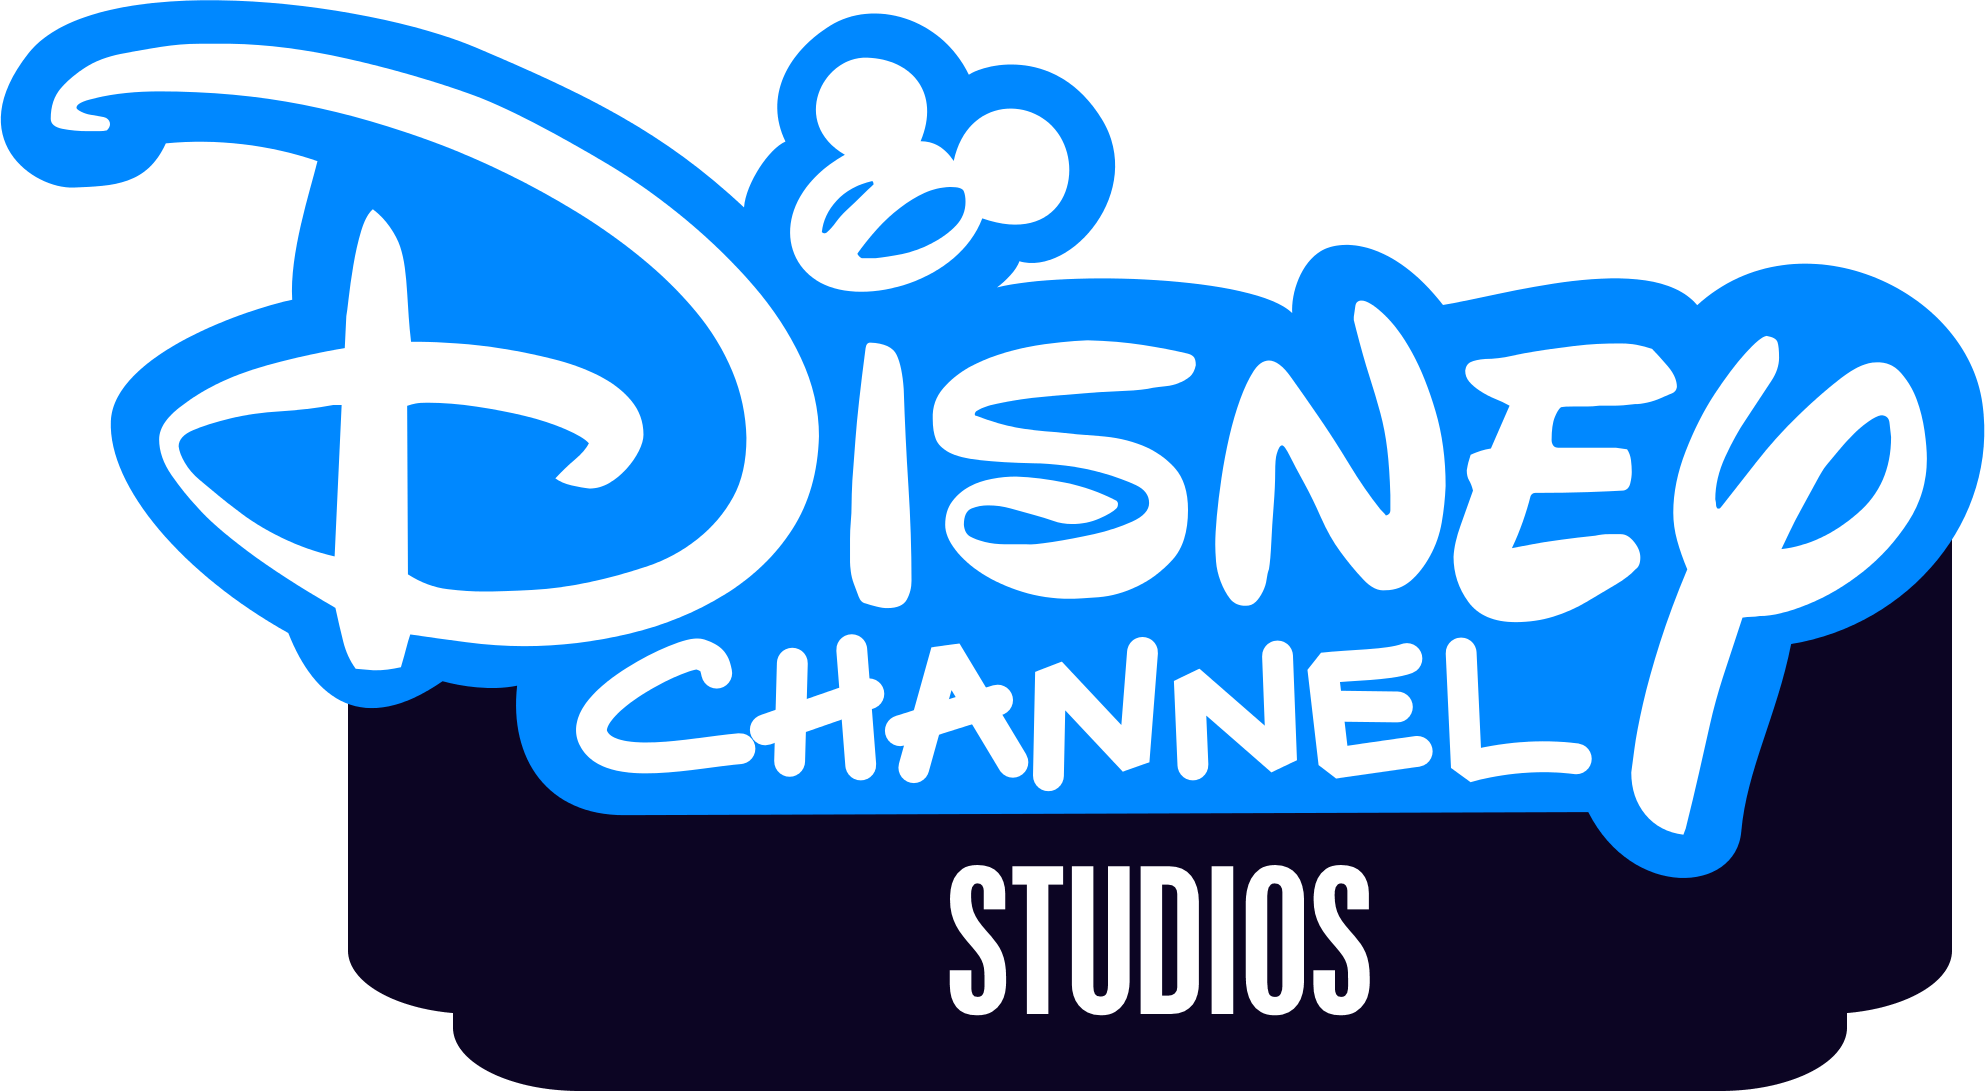 Передач канала дисней. Канал Disney. Телеканал Дисней. Логотип Disney channel. Телеканал Дисней лого.